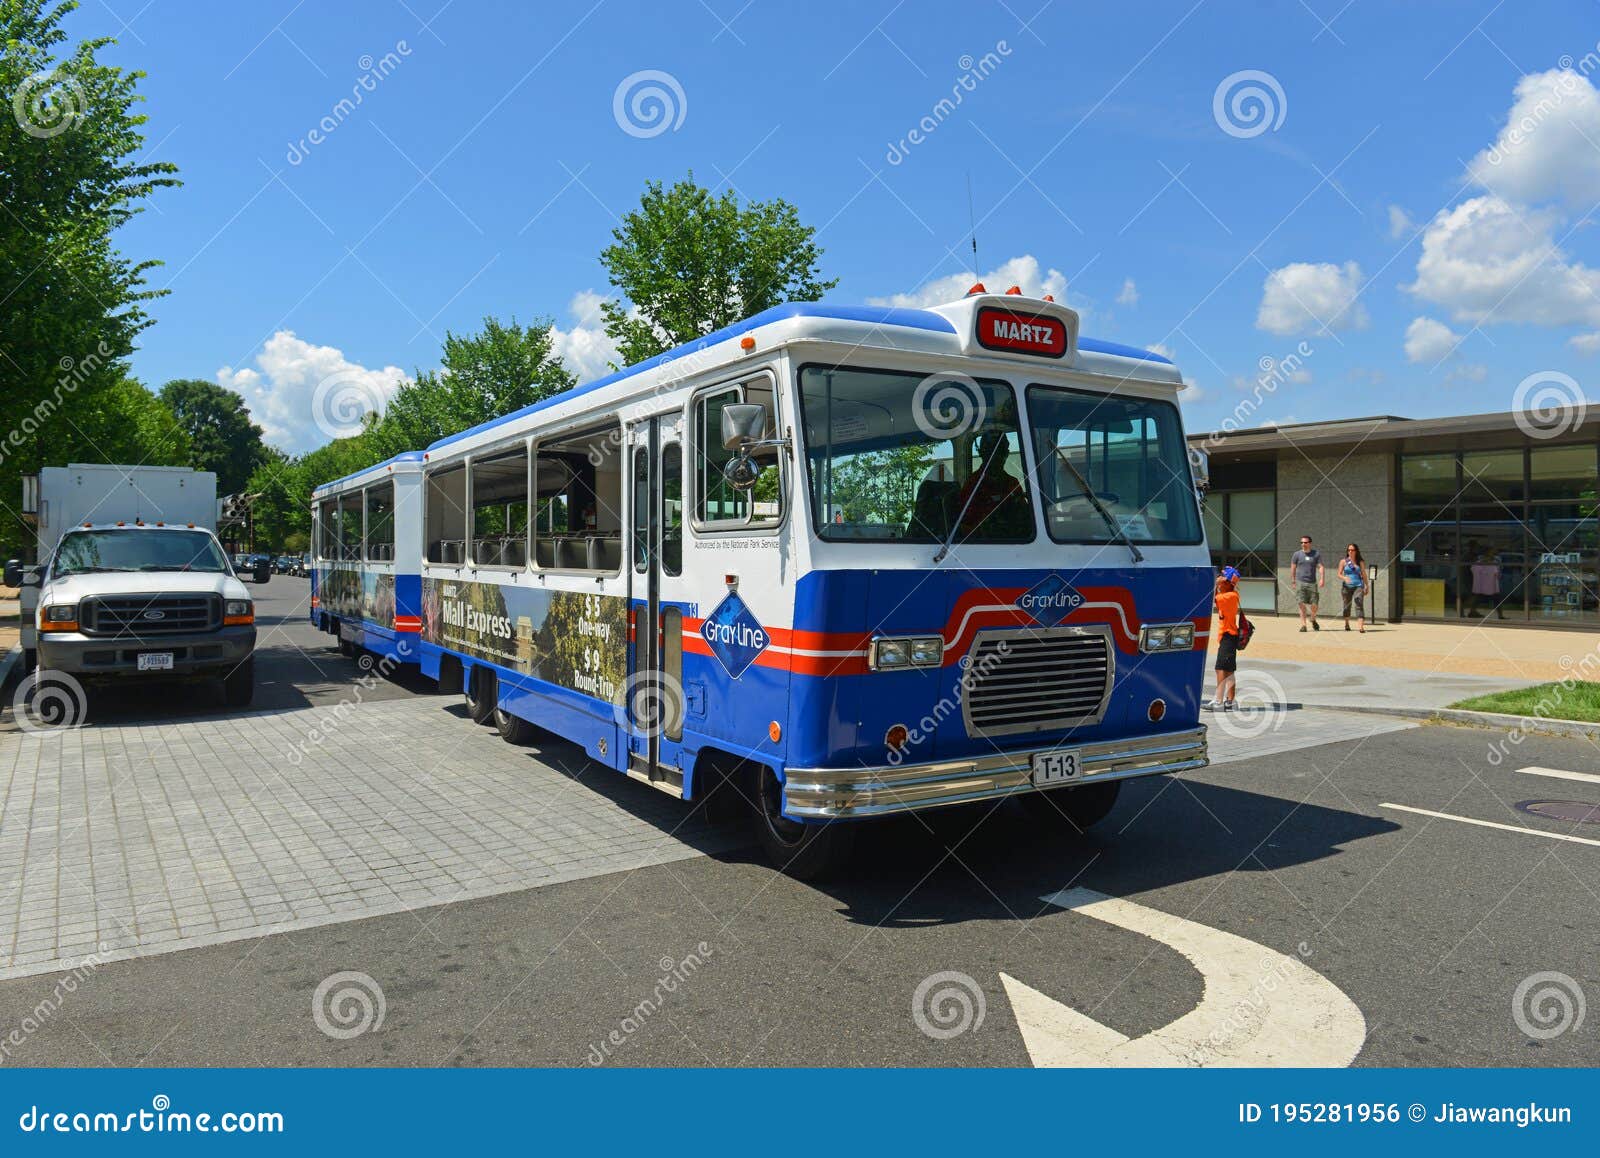 gray line tour bus